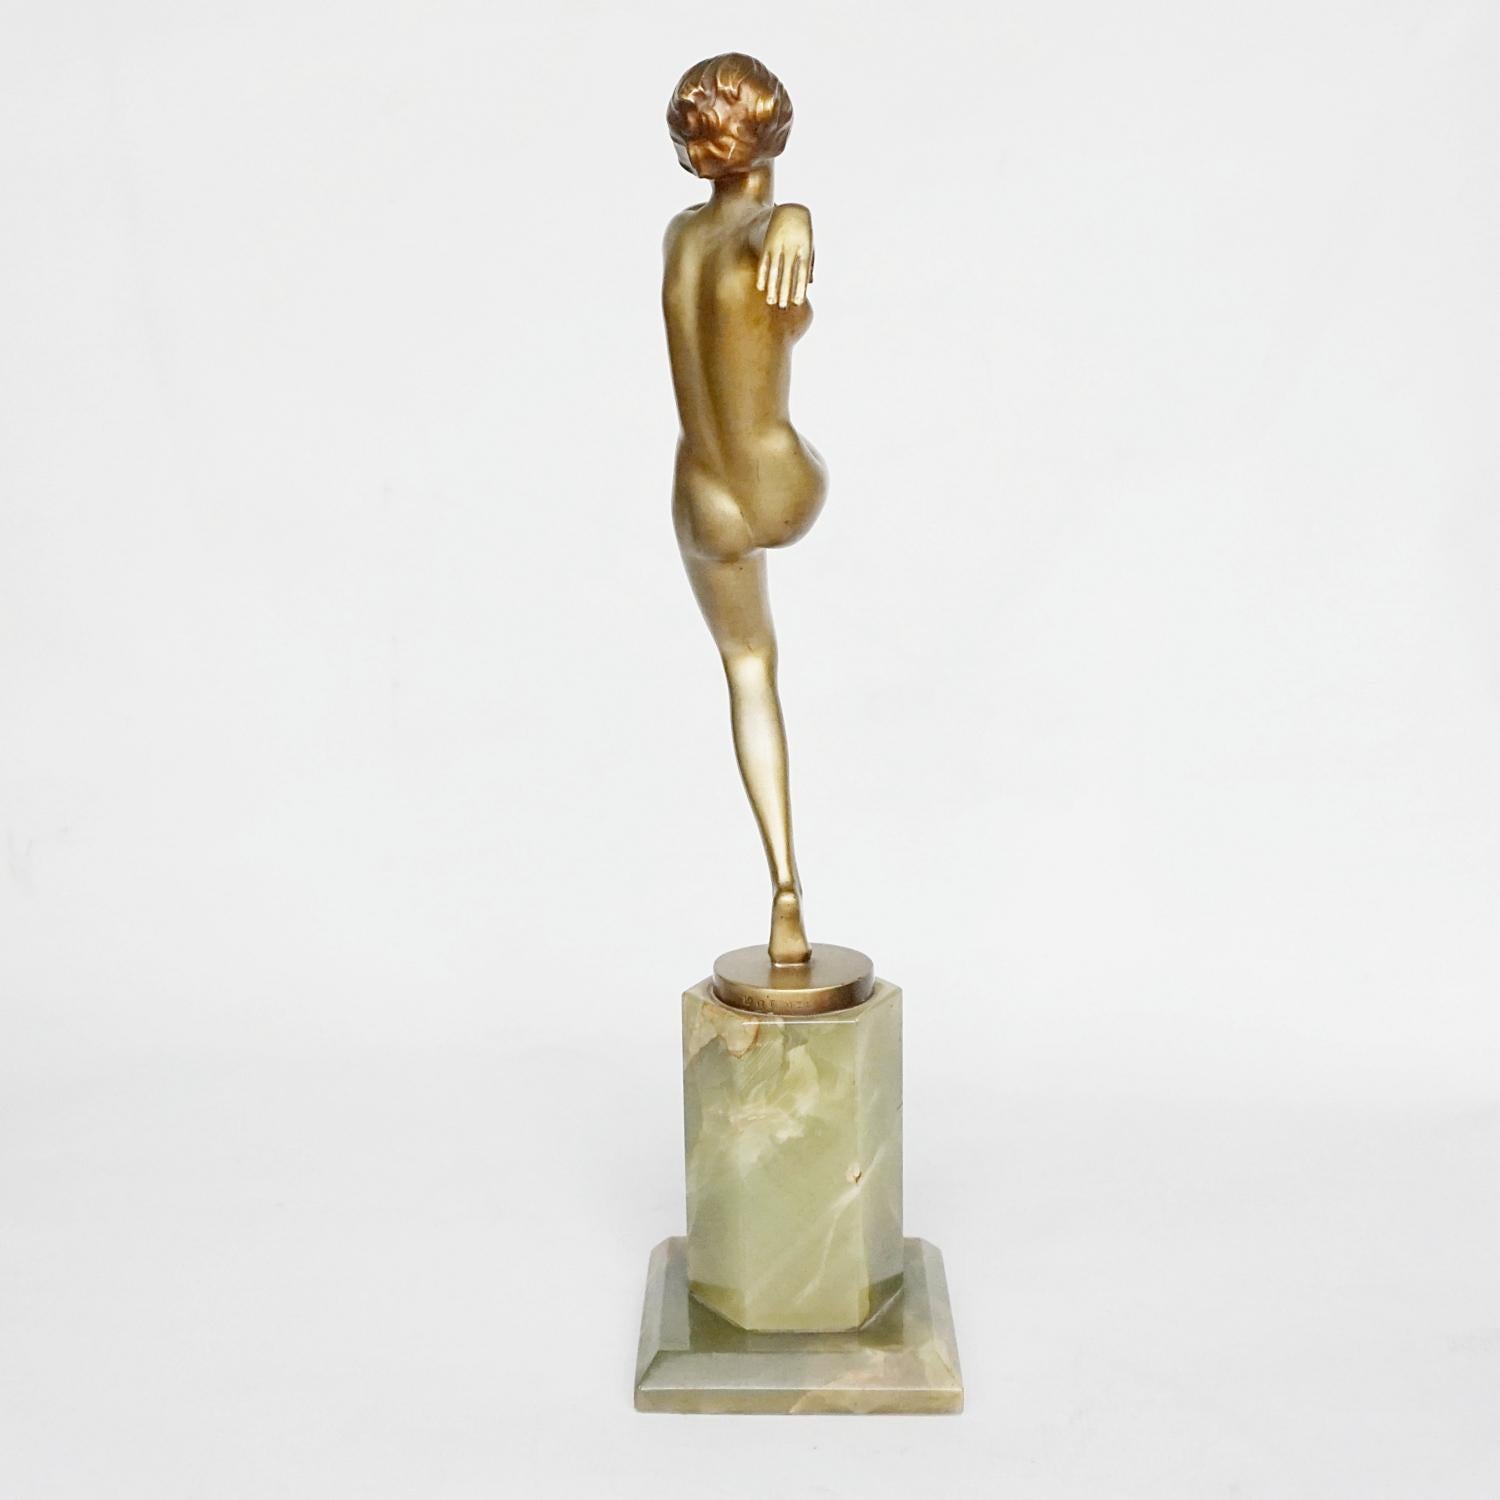 'High Kick' An Art Deco Cold Painted Bronze Sculpture by Josef Lorenzl 1